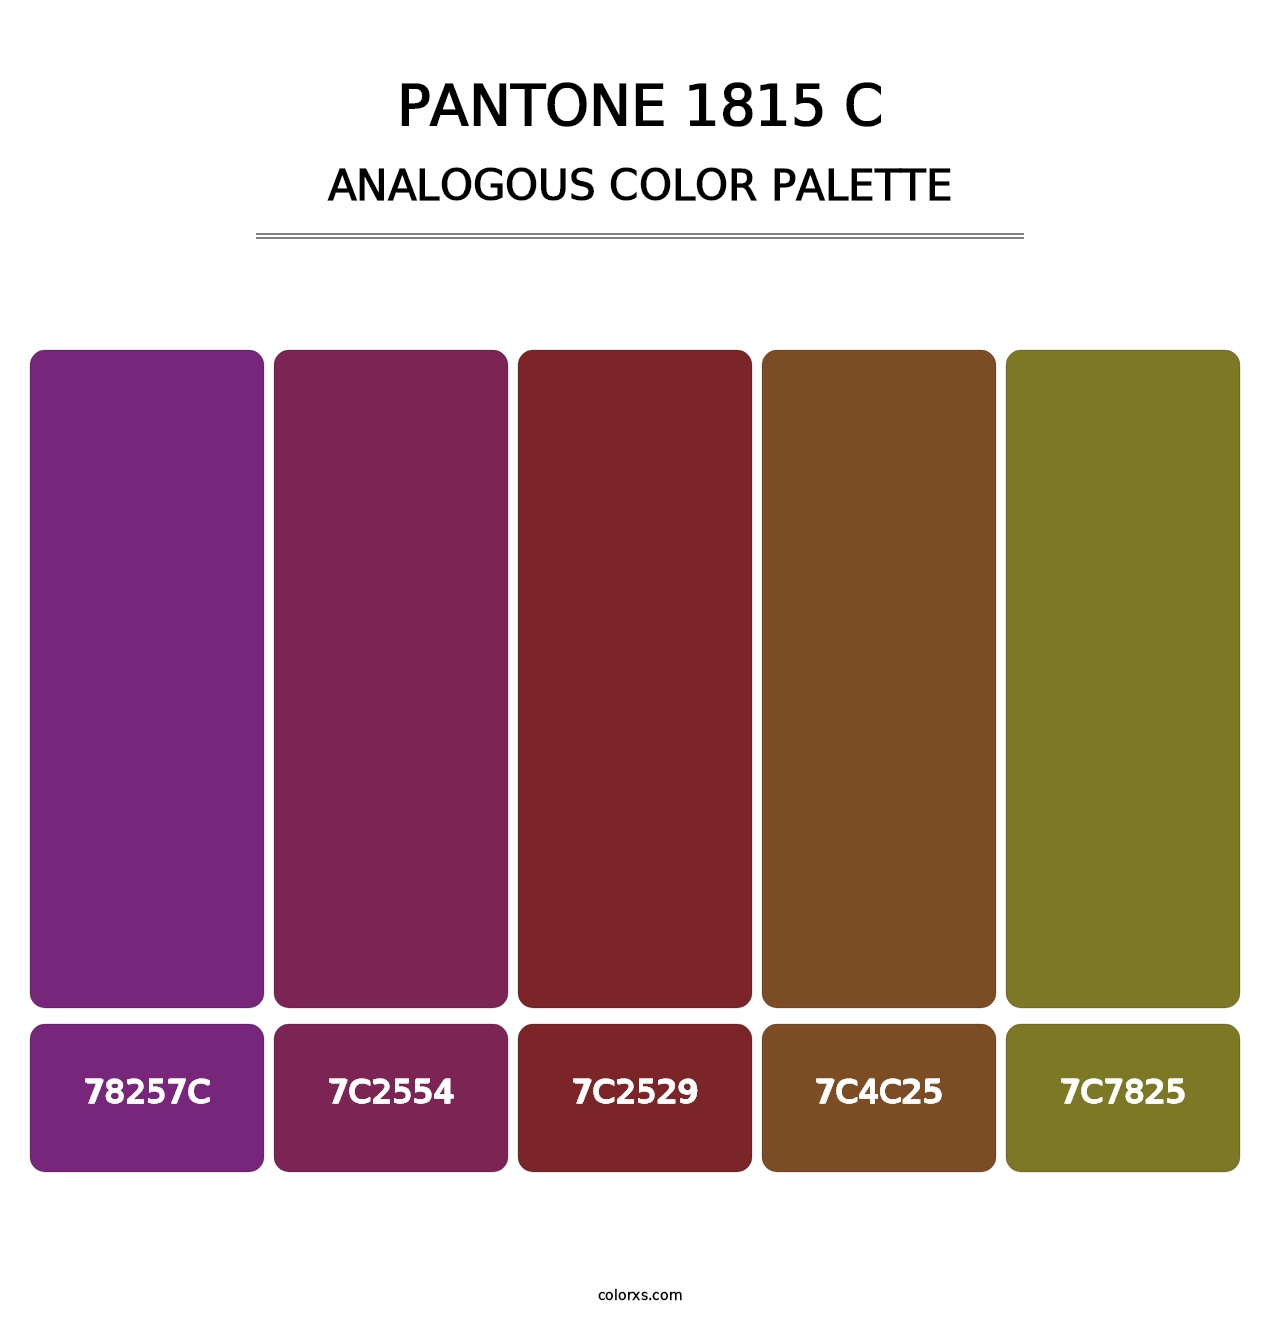 PANTONE 1815 C - Analogous Color Palette